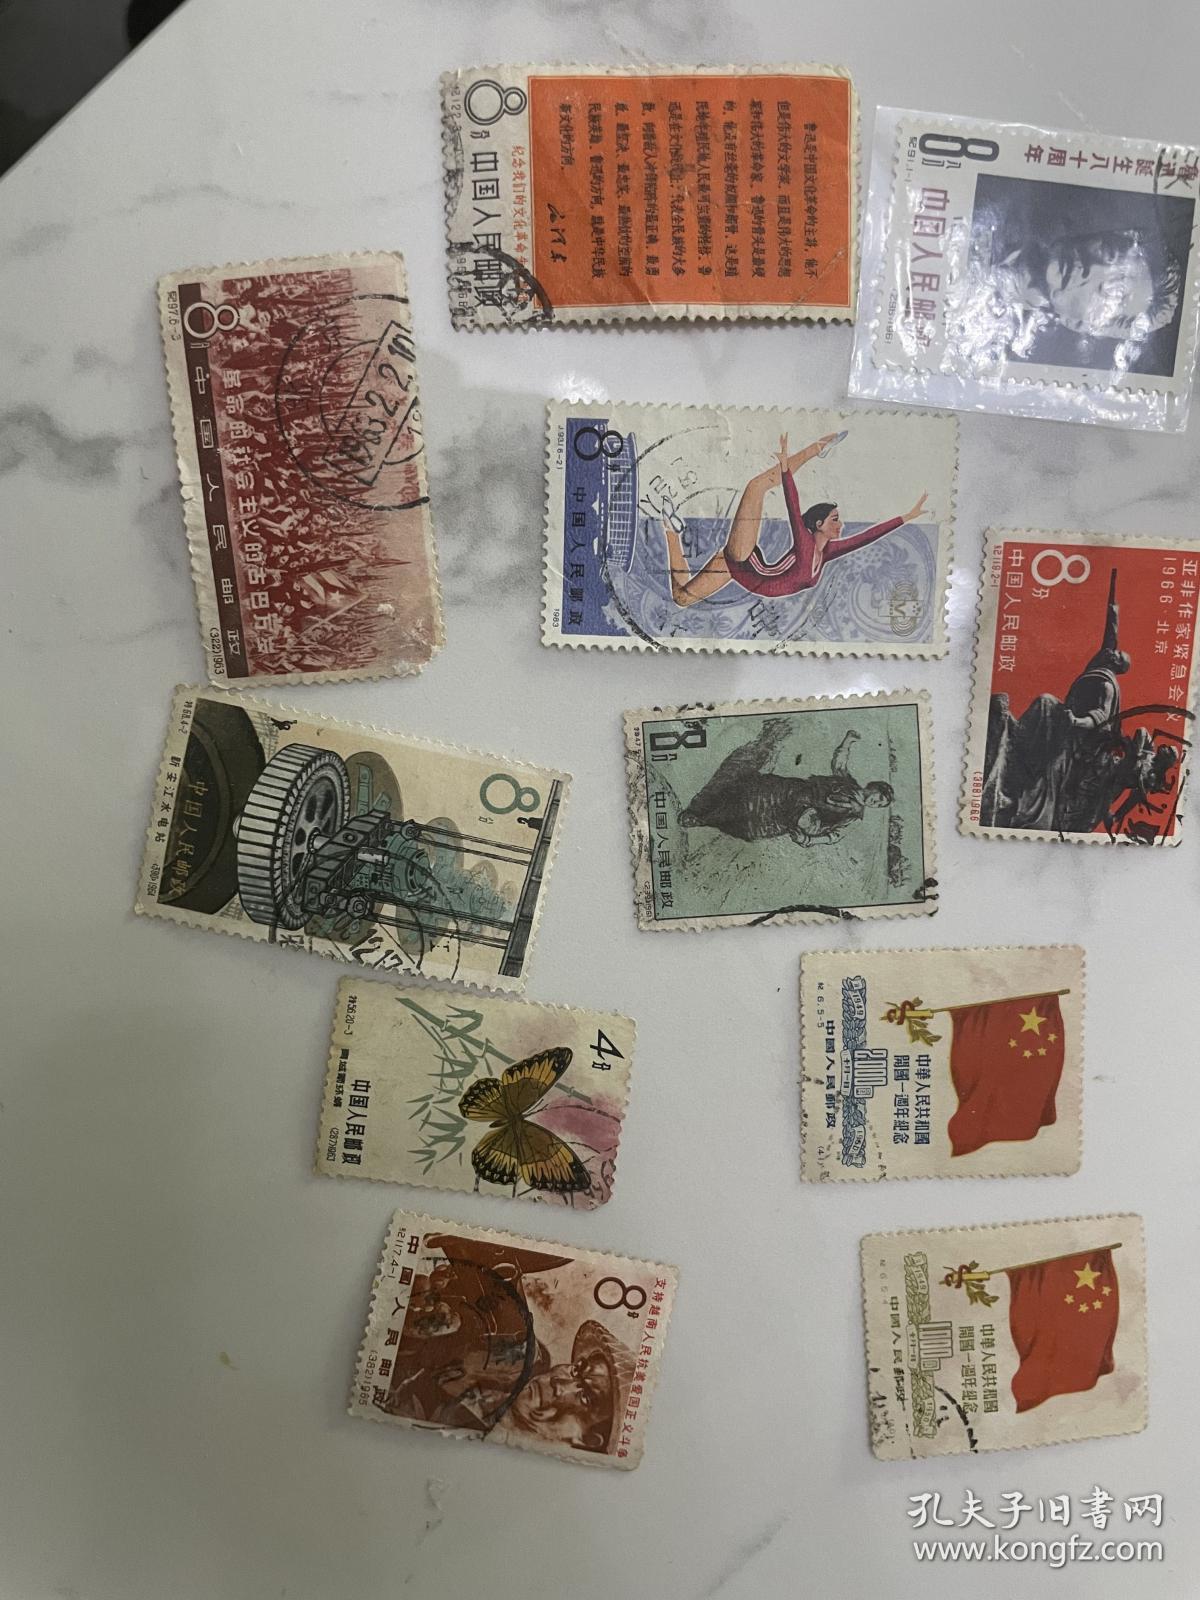 老纪特邮票11张不同 一起100
感兴趣的话点“我想要”和我私聊吧～